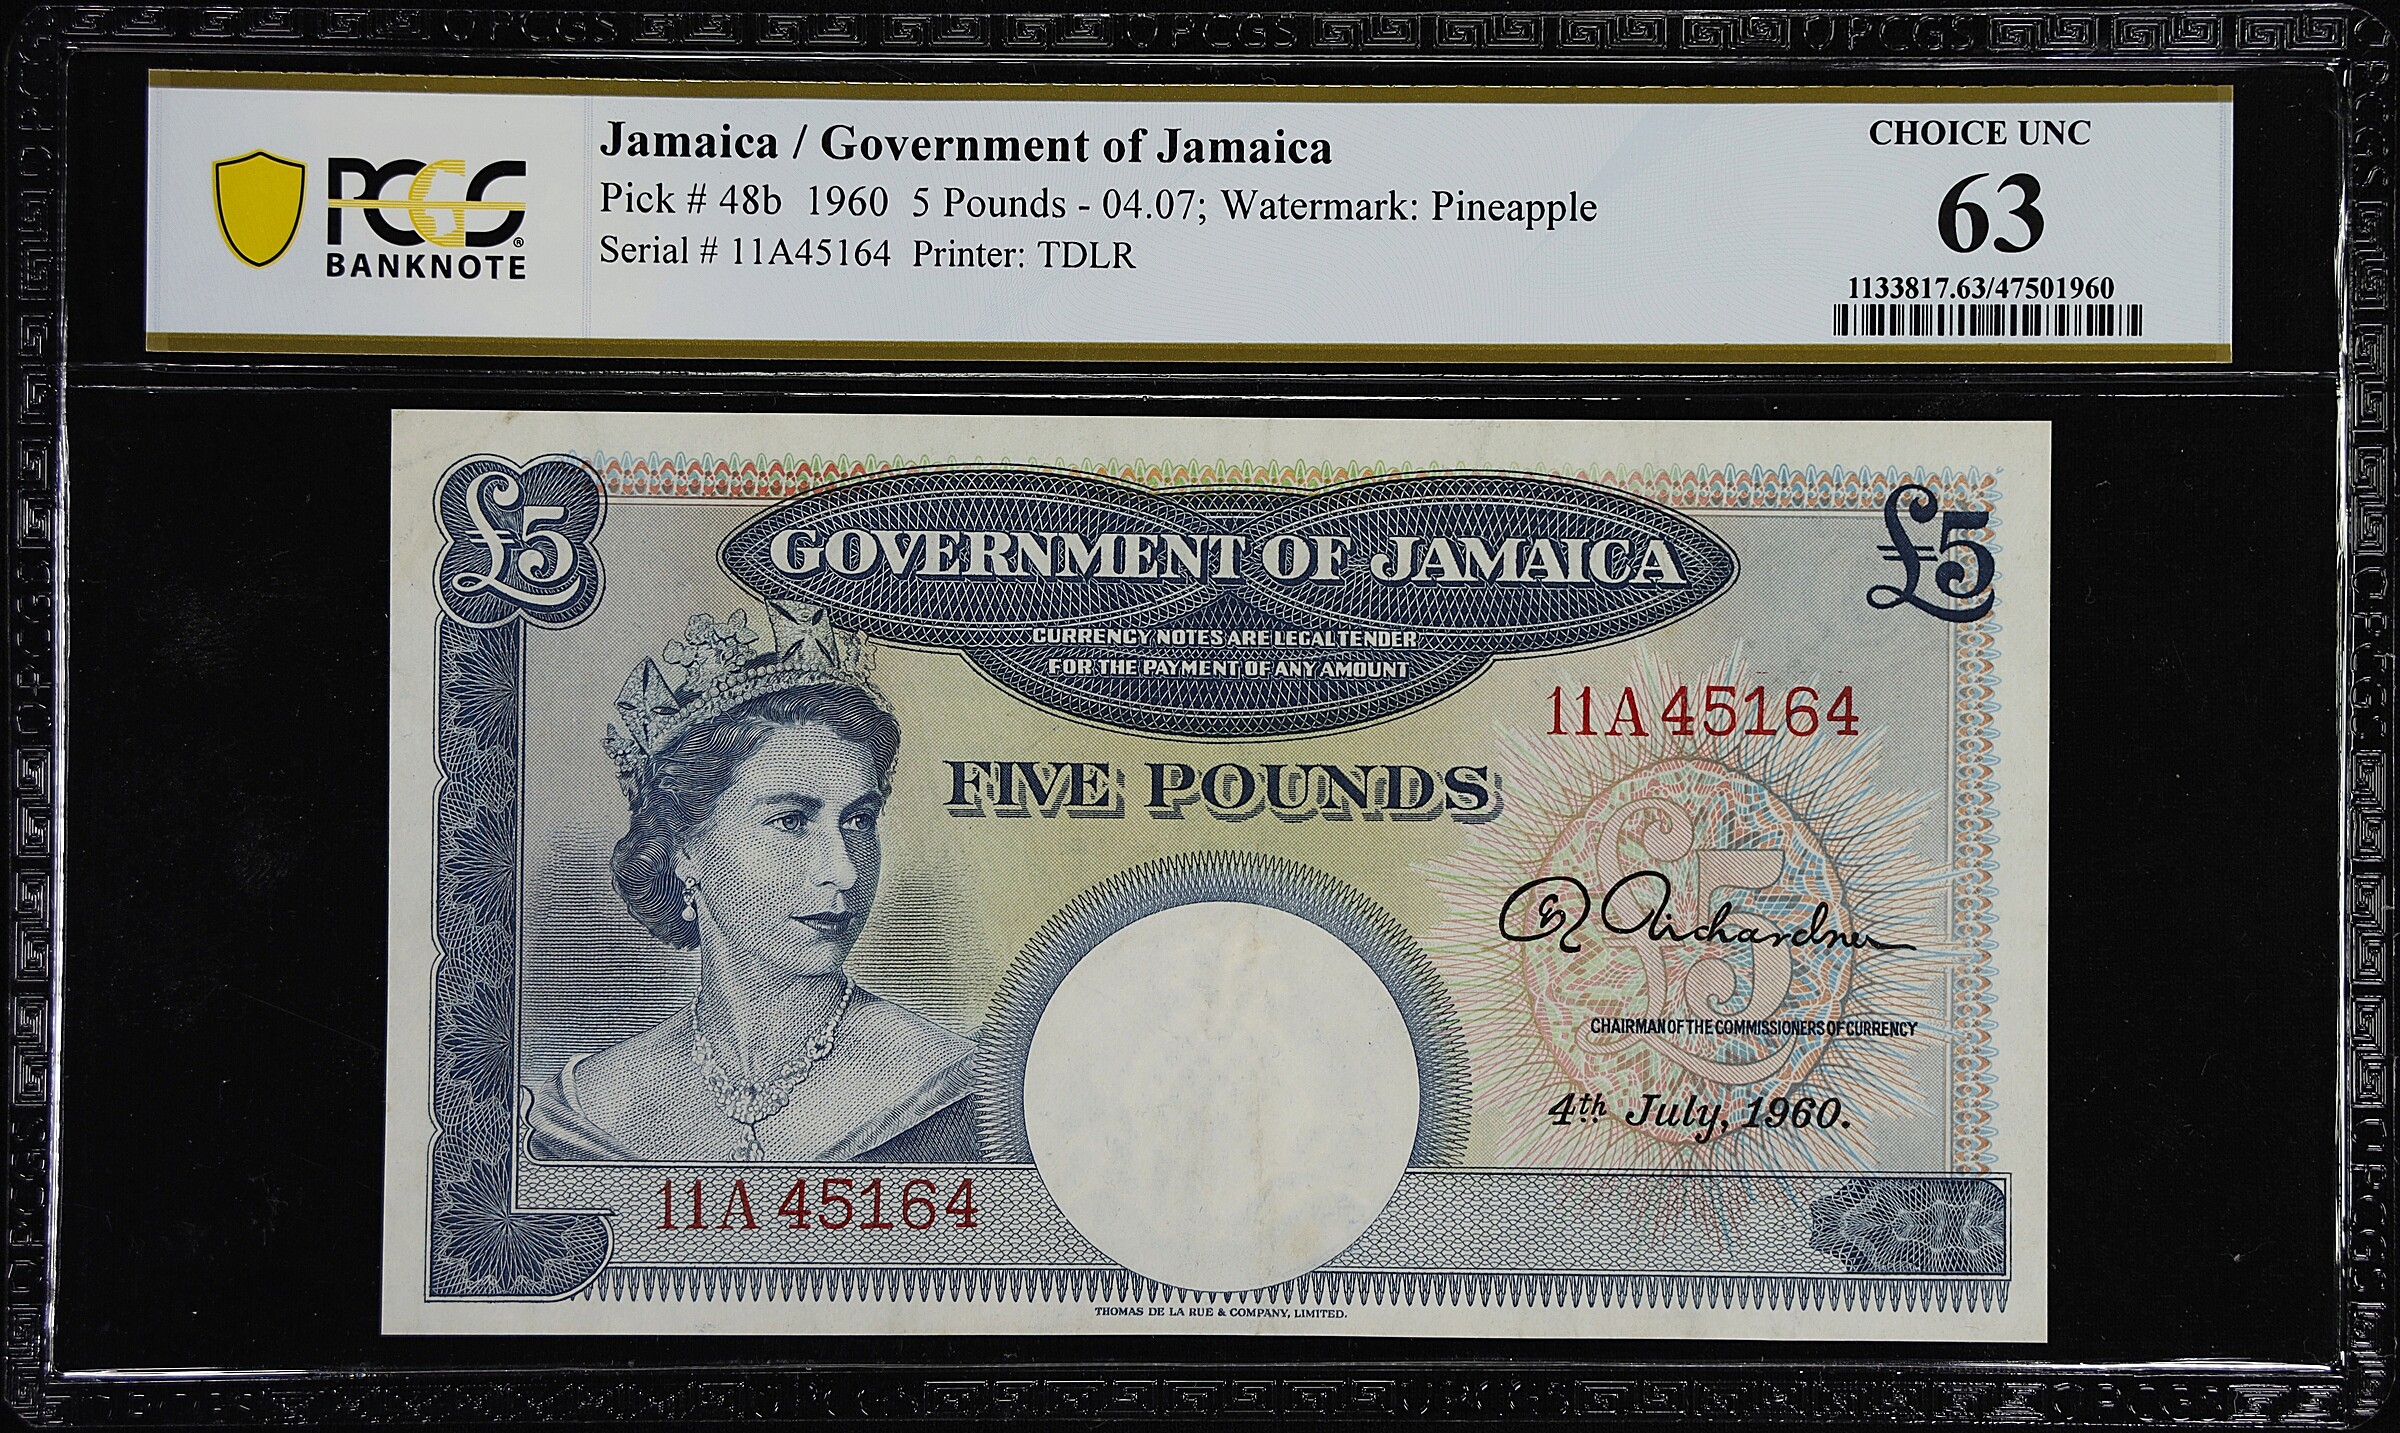 JAMAICA. Government of Jamaica. 5 Pounds